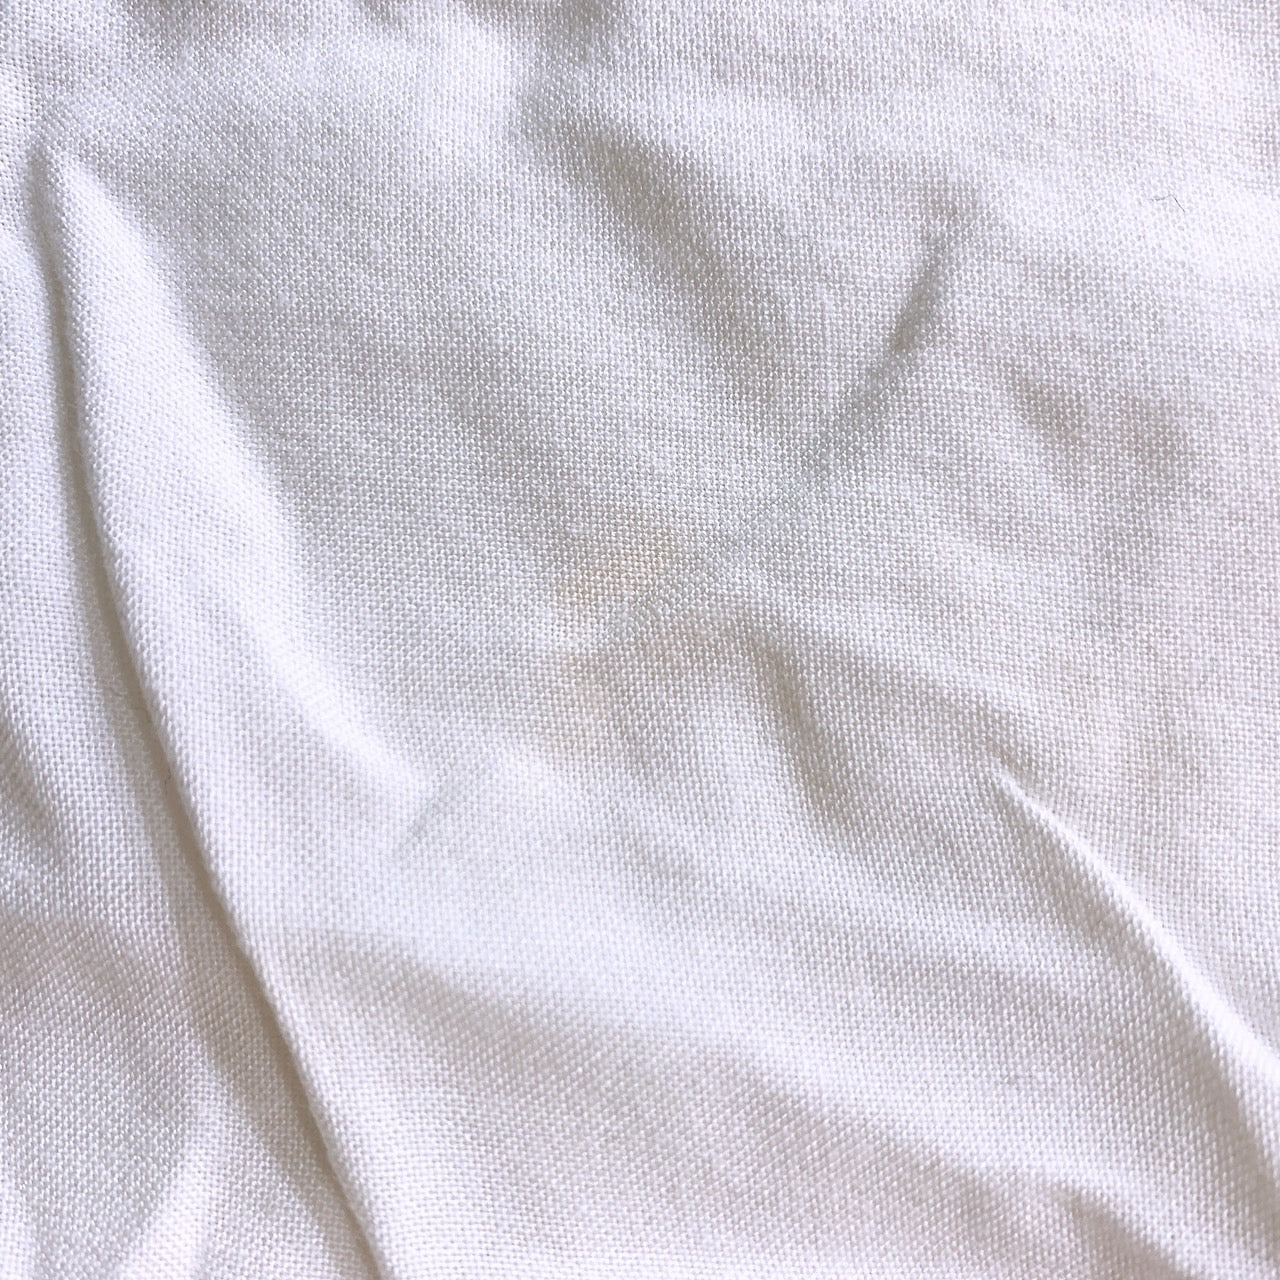 【26419】 Lutique ルティーク 半袖シャツ サイズM ホワイト シンプル 無地 カジュアル 春夏 前ボタン 胸ポケット 衿 レディース